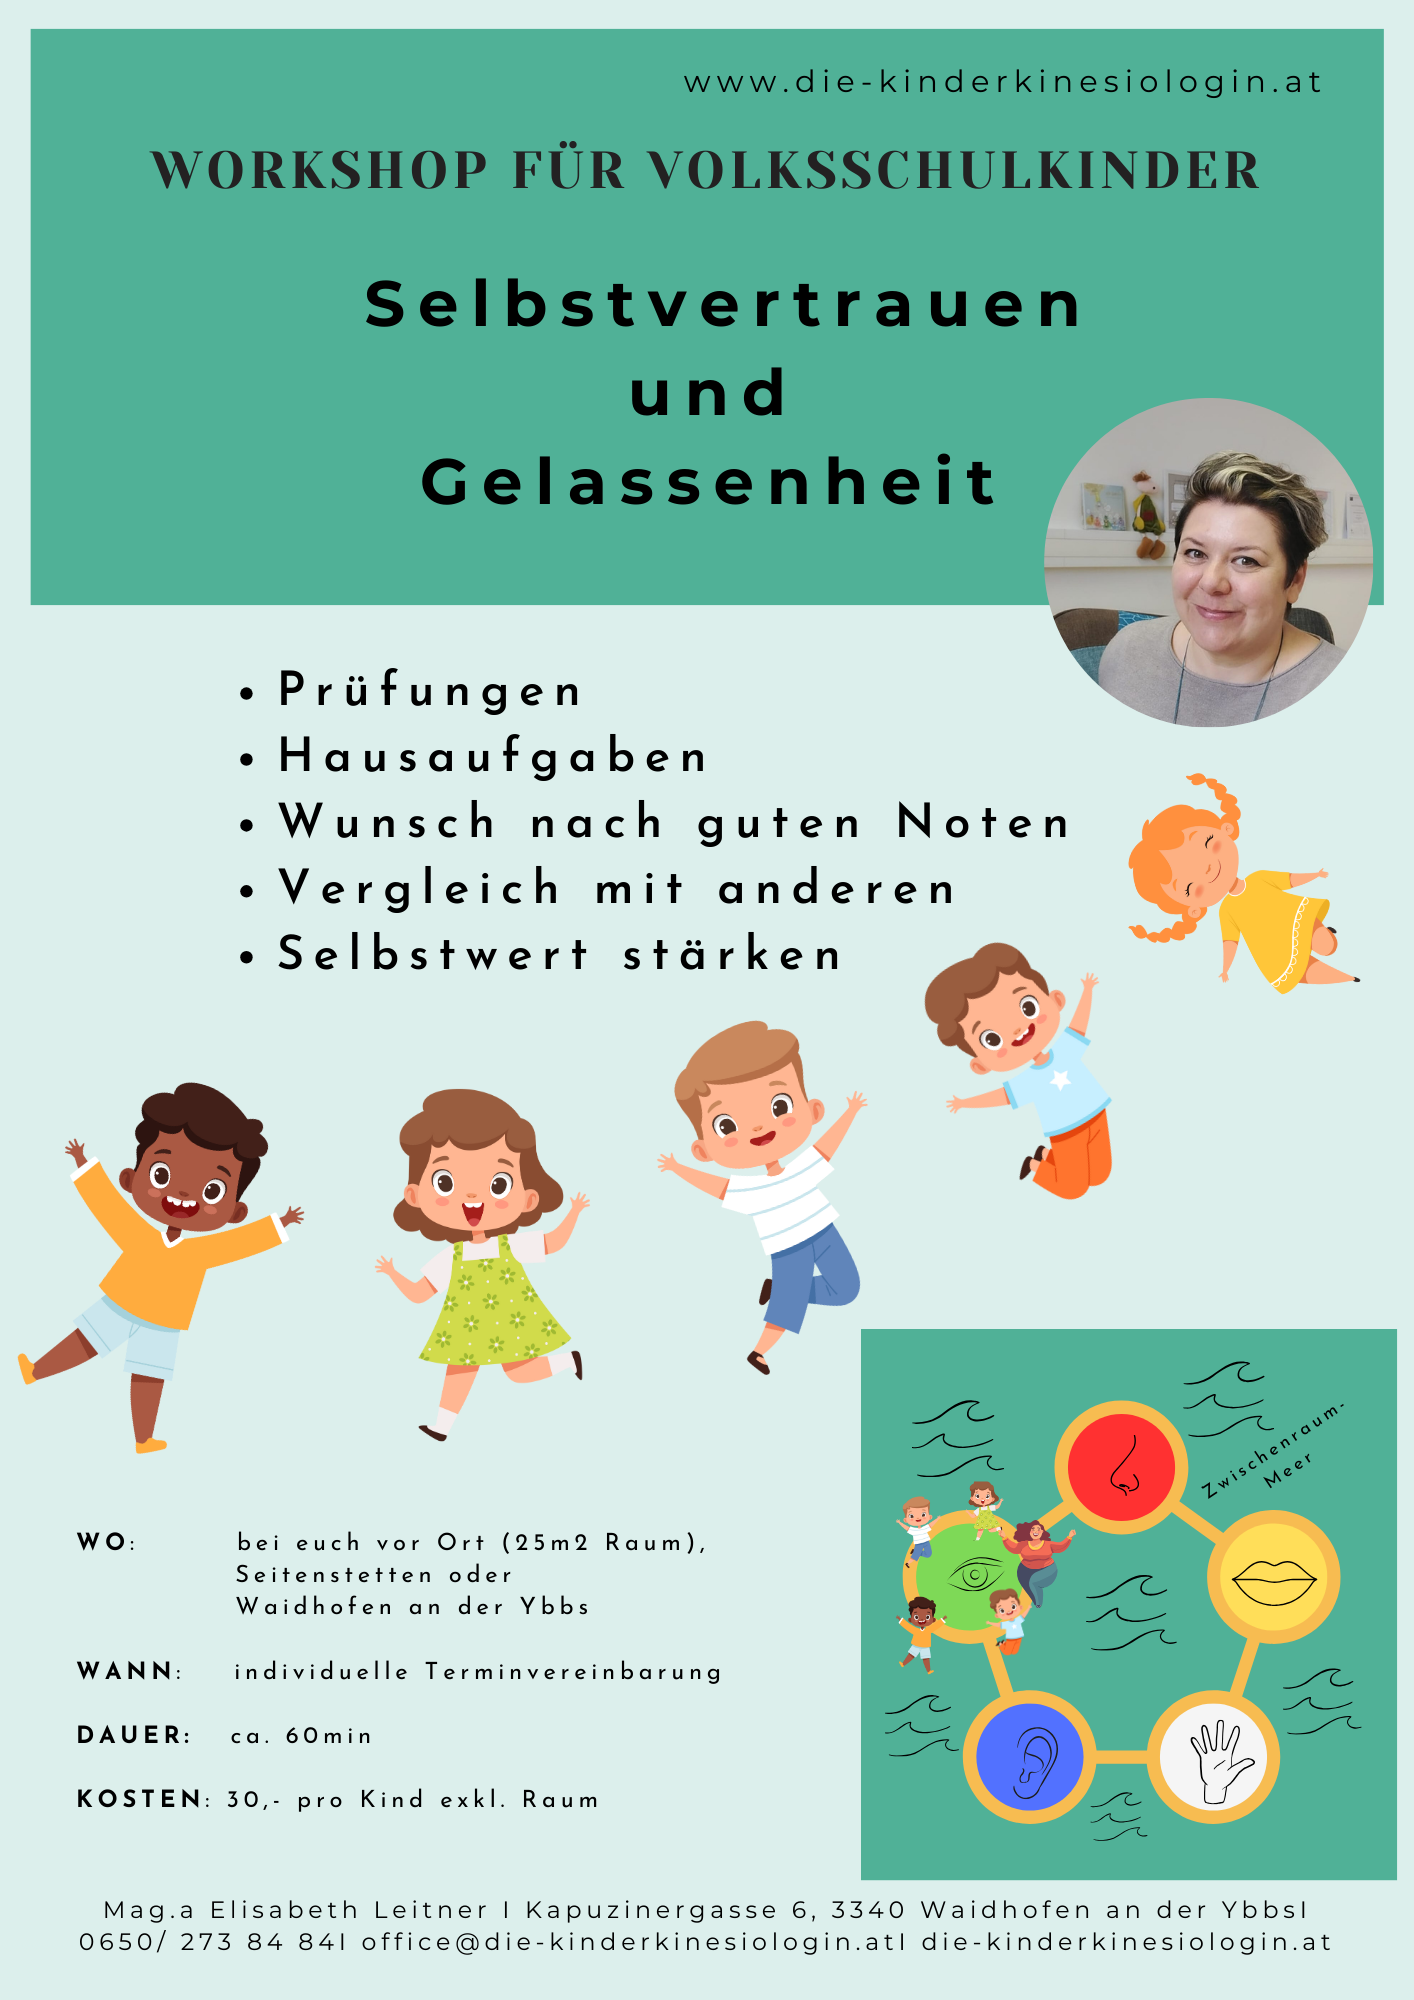 Flyer: Workshop für Volksschulkinder "Selbstvertrauen und Gelassenheit"